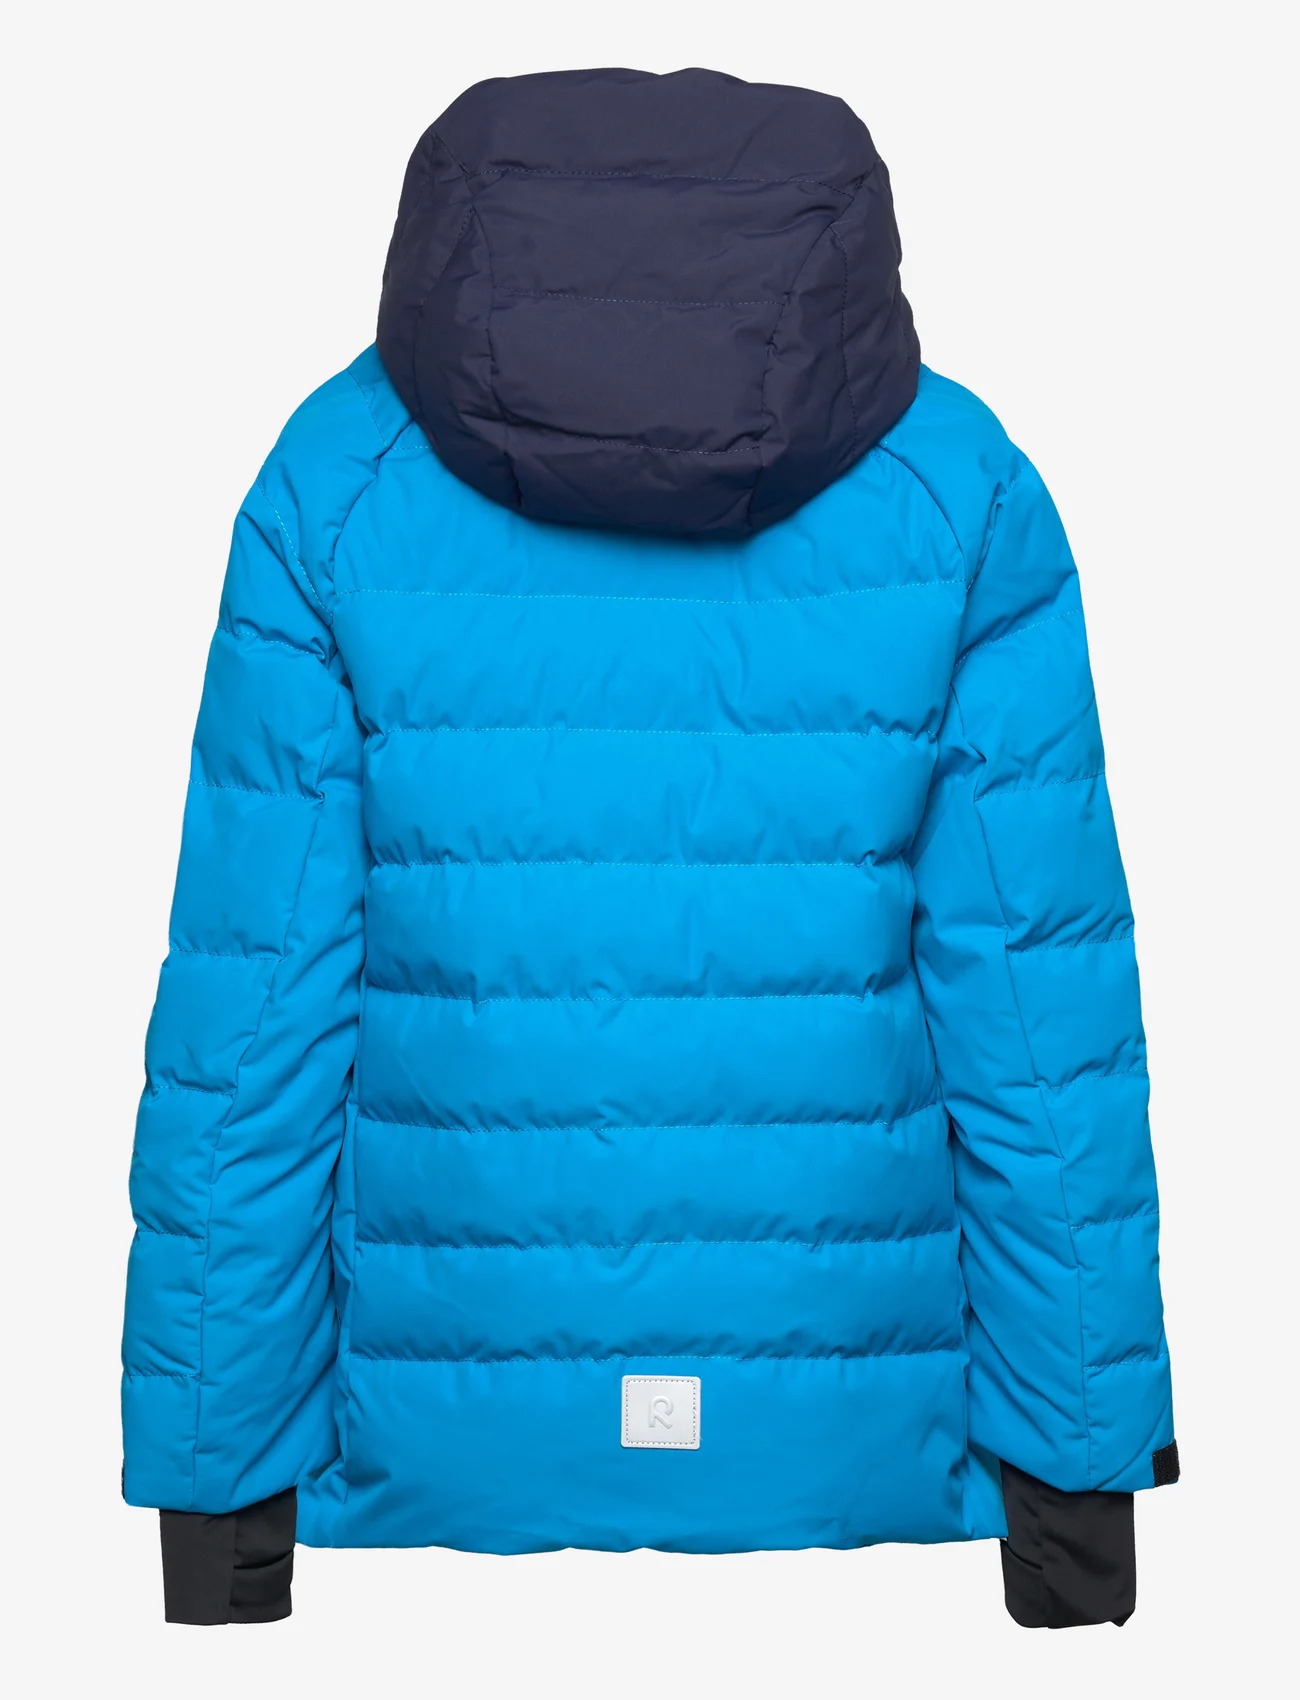 Reima - Juniors' Winter jacket Kuosku - pūkinės striukės - true blue - 1